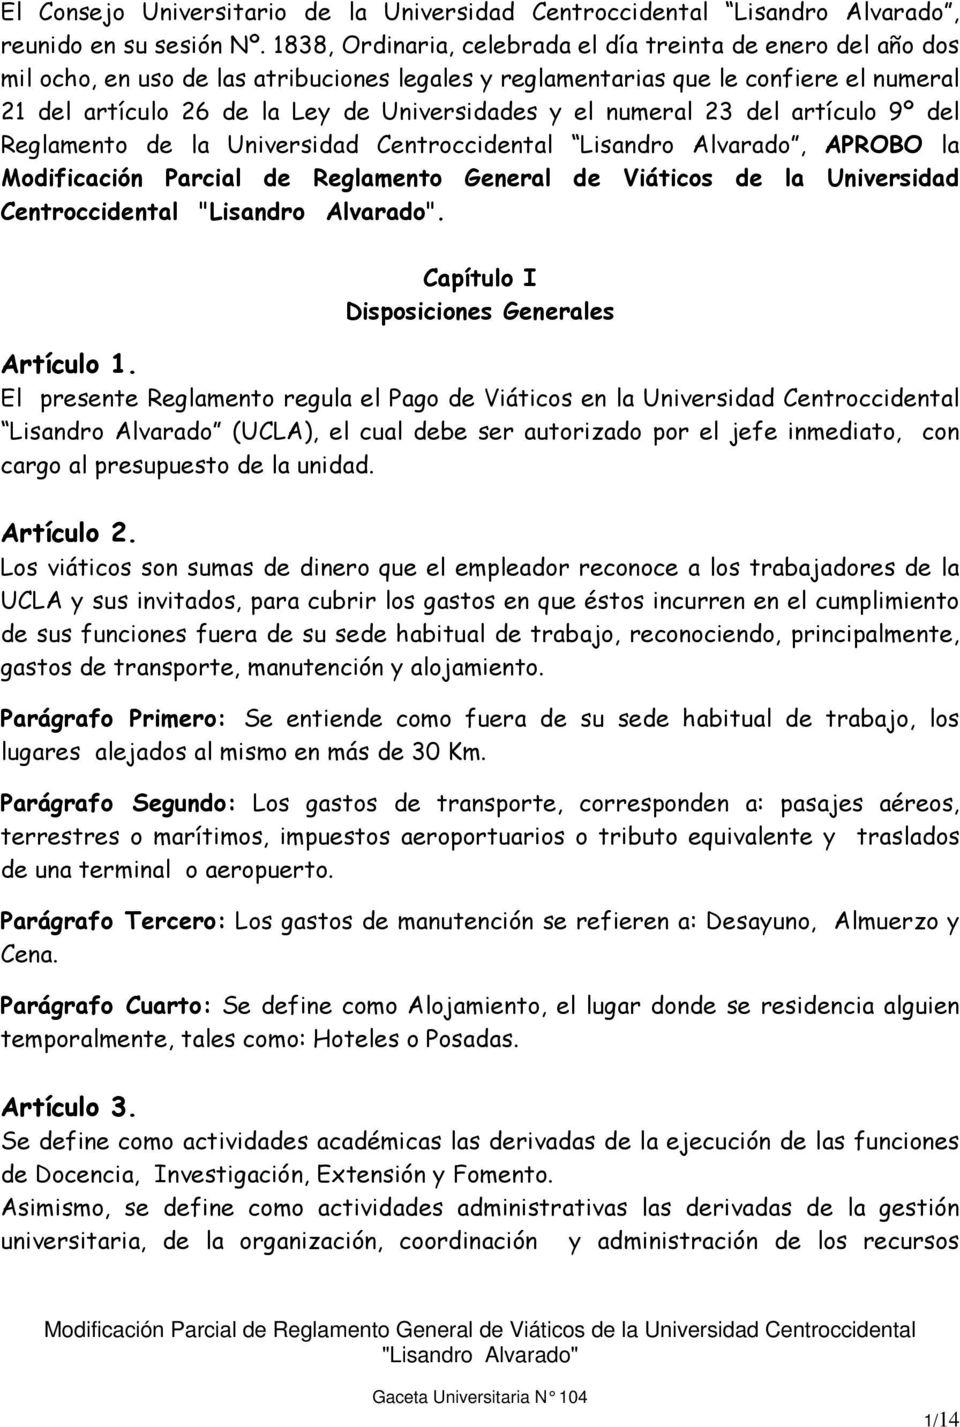 el numeral 23 del artículo 9º del Reglamento de la Universidad Centroccidental Lisandro Alvarado, APROBO la Modificación Parcial de Reglamento General de Viáticos de la Universidad Centroccidental.